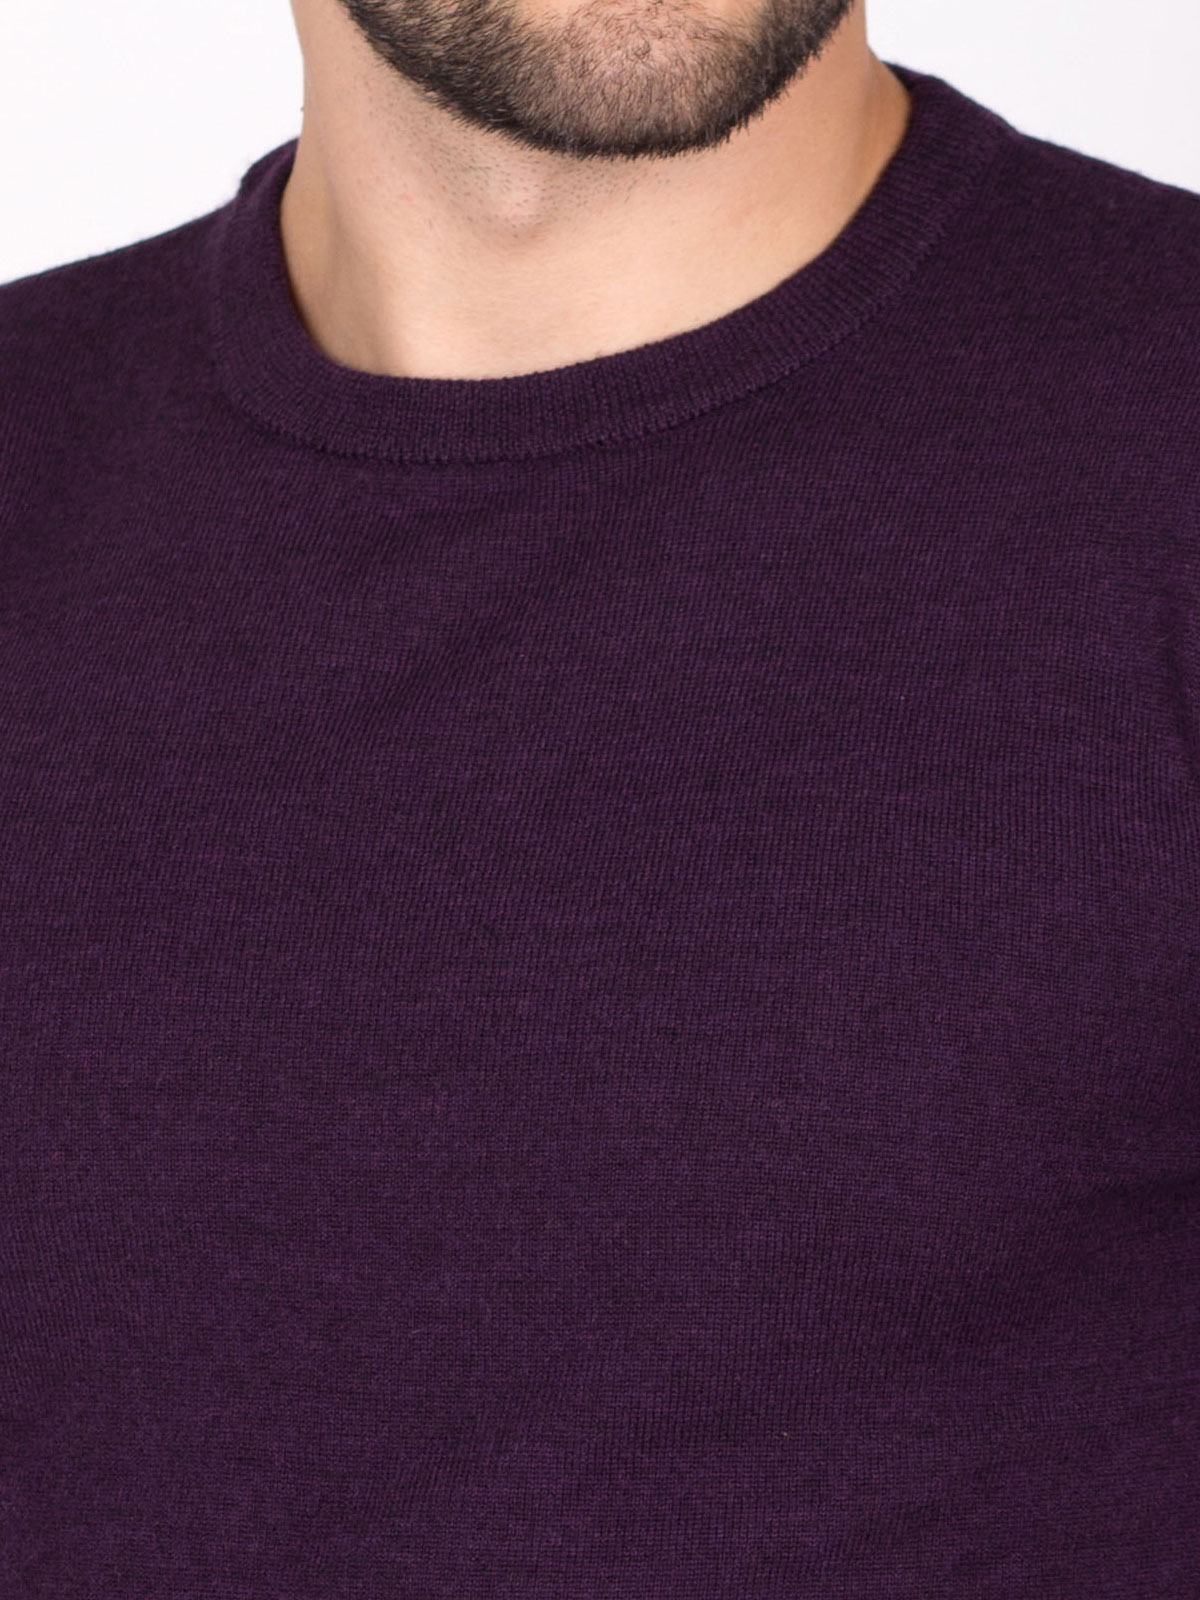 Πλεκτό πουλόβερ σε μωβ χρώμα - 33089 € 34.87 img3